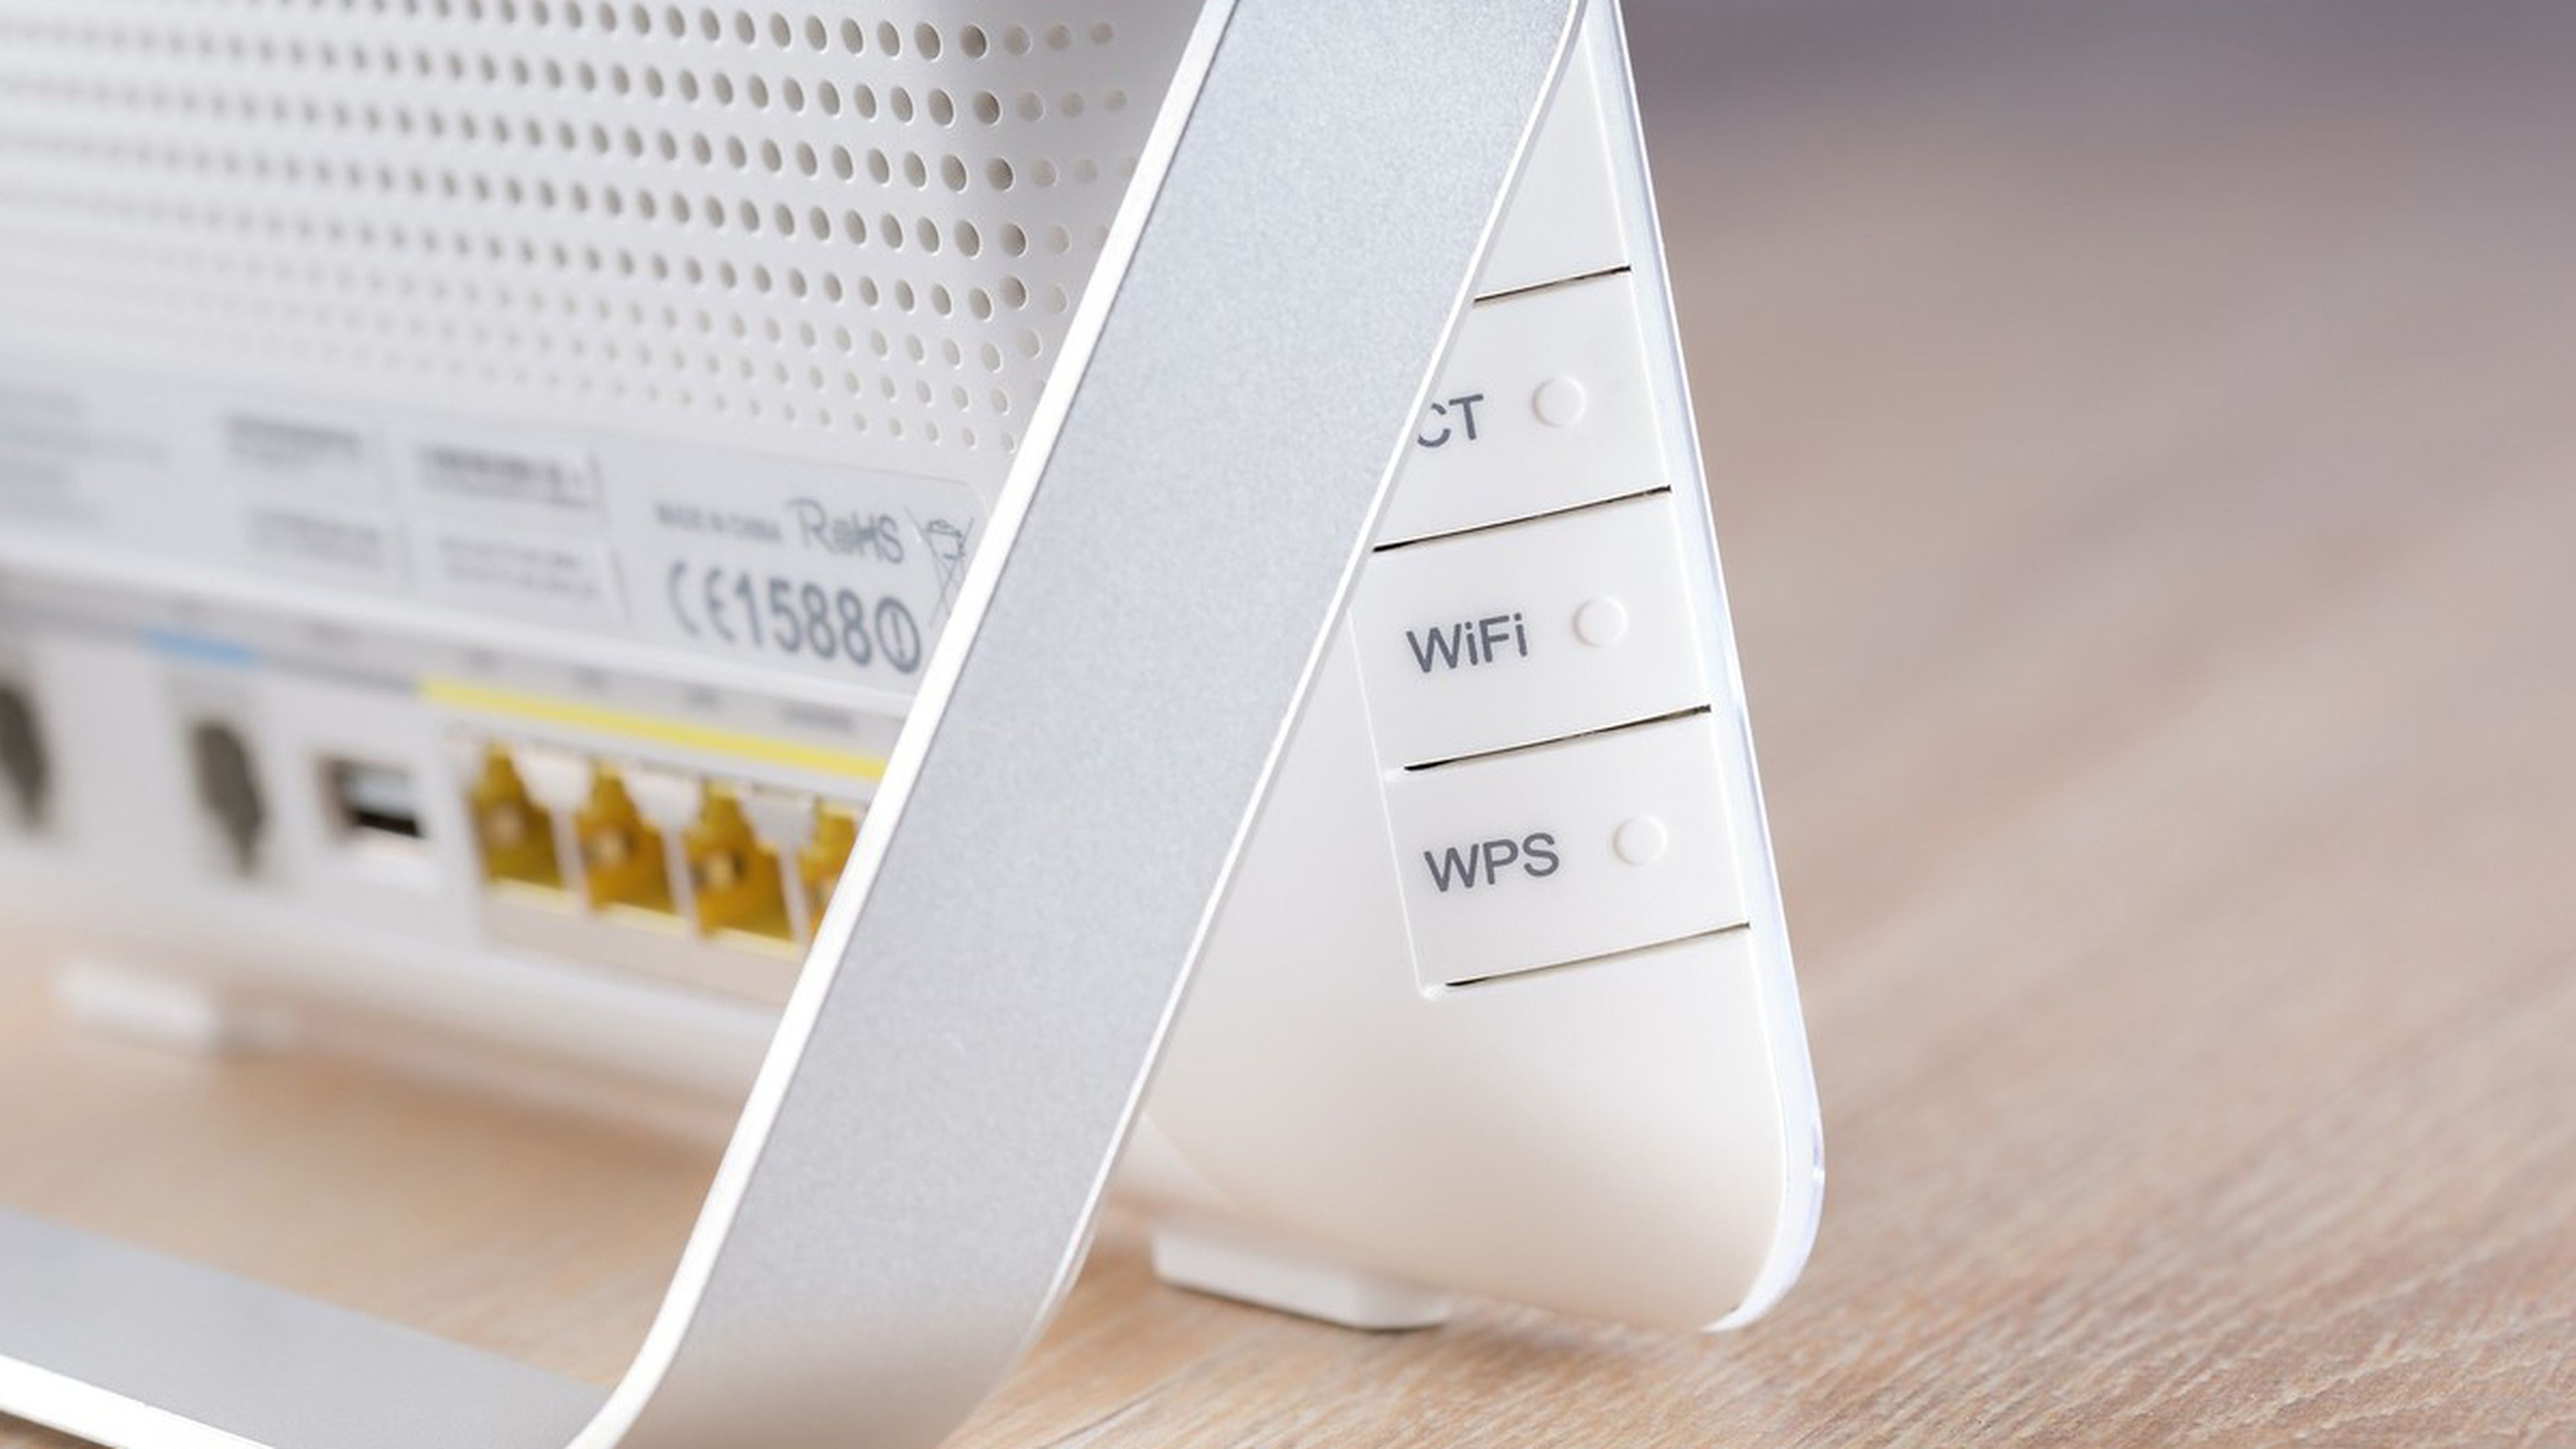 Cómo configurar un repetidor WiFi: pasos a seguir en cualquier router